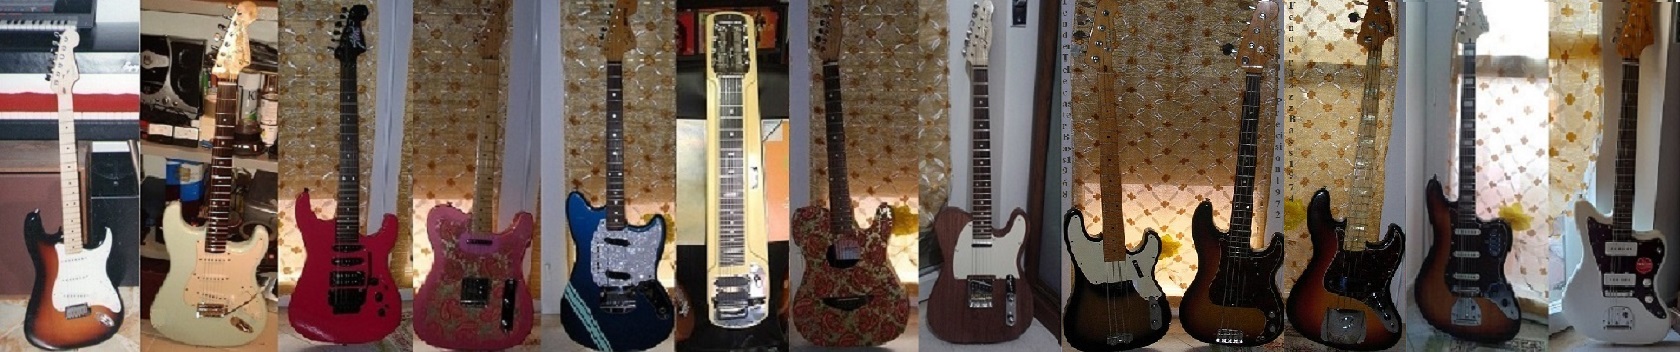 Fino a poco tempo fa comperavo solo Fender Made in USA salvo un paio giapponesi e koreane.